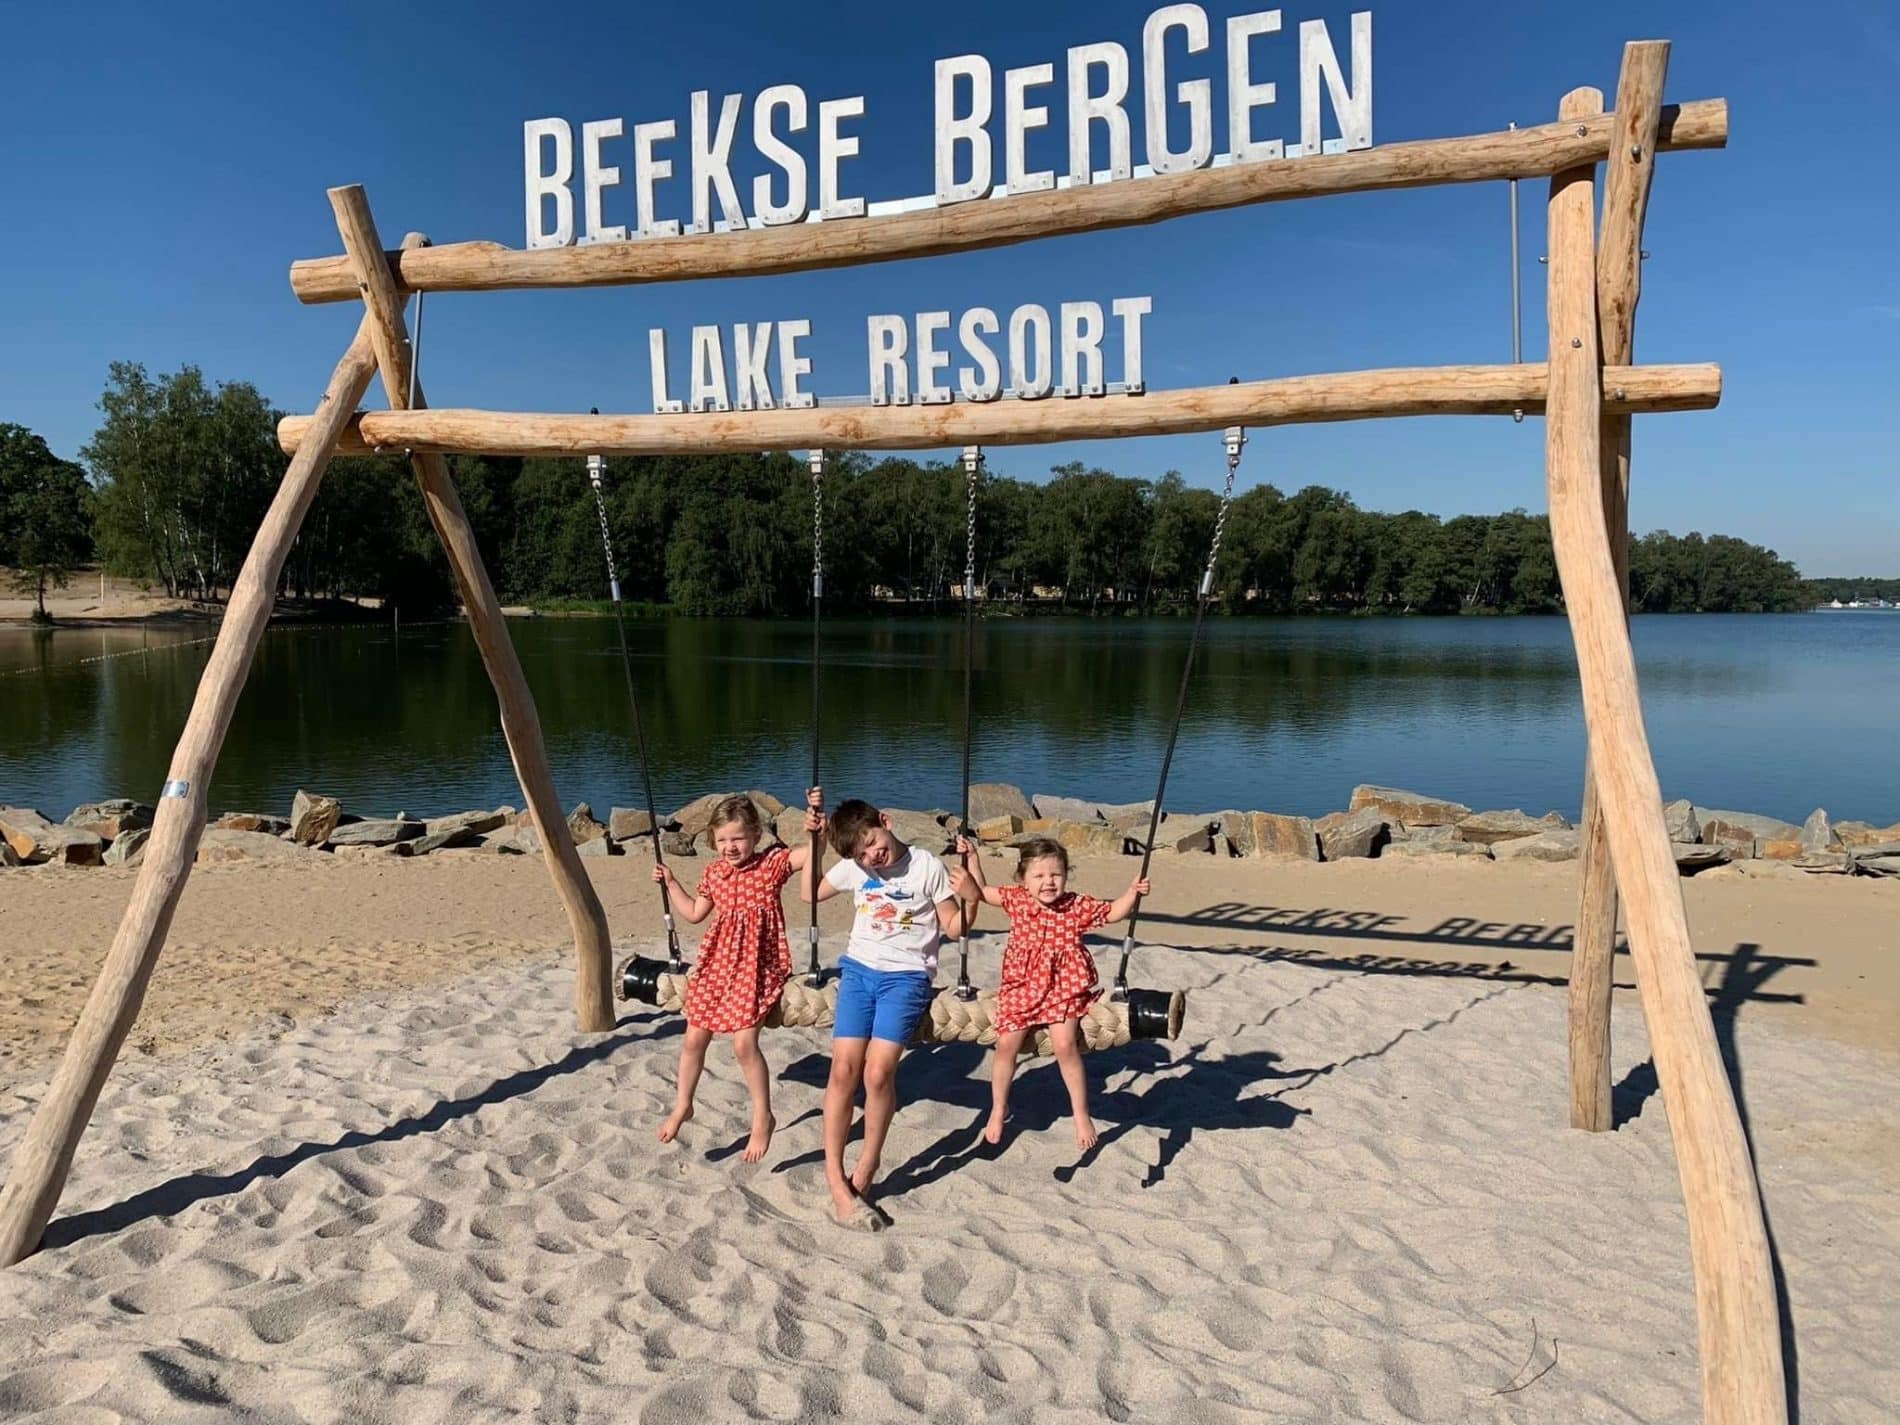 Beekse Bergen Lake Resort